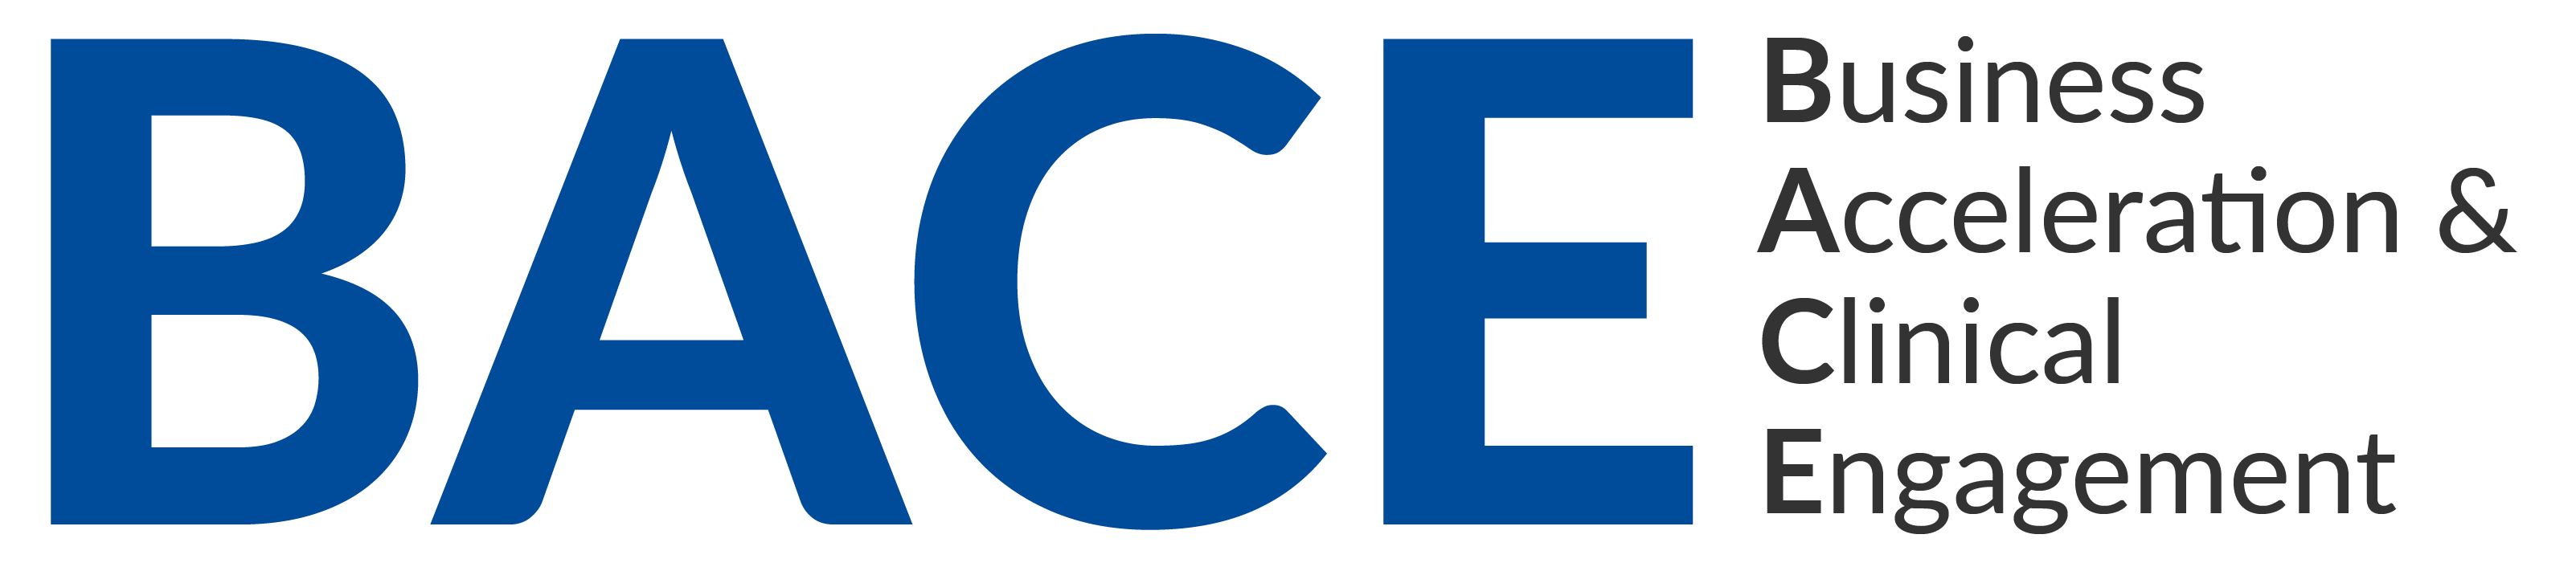 BACE Program Logo